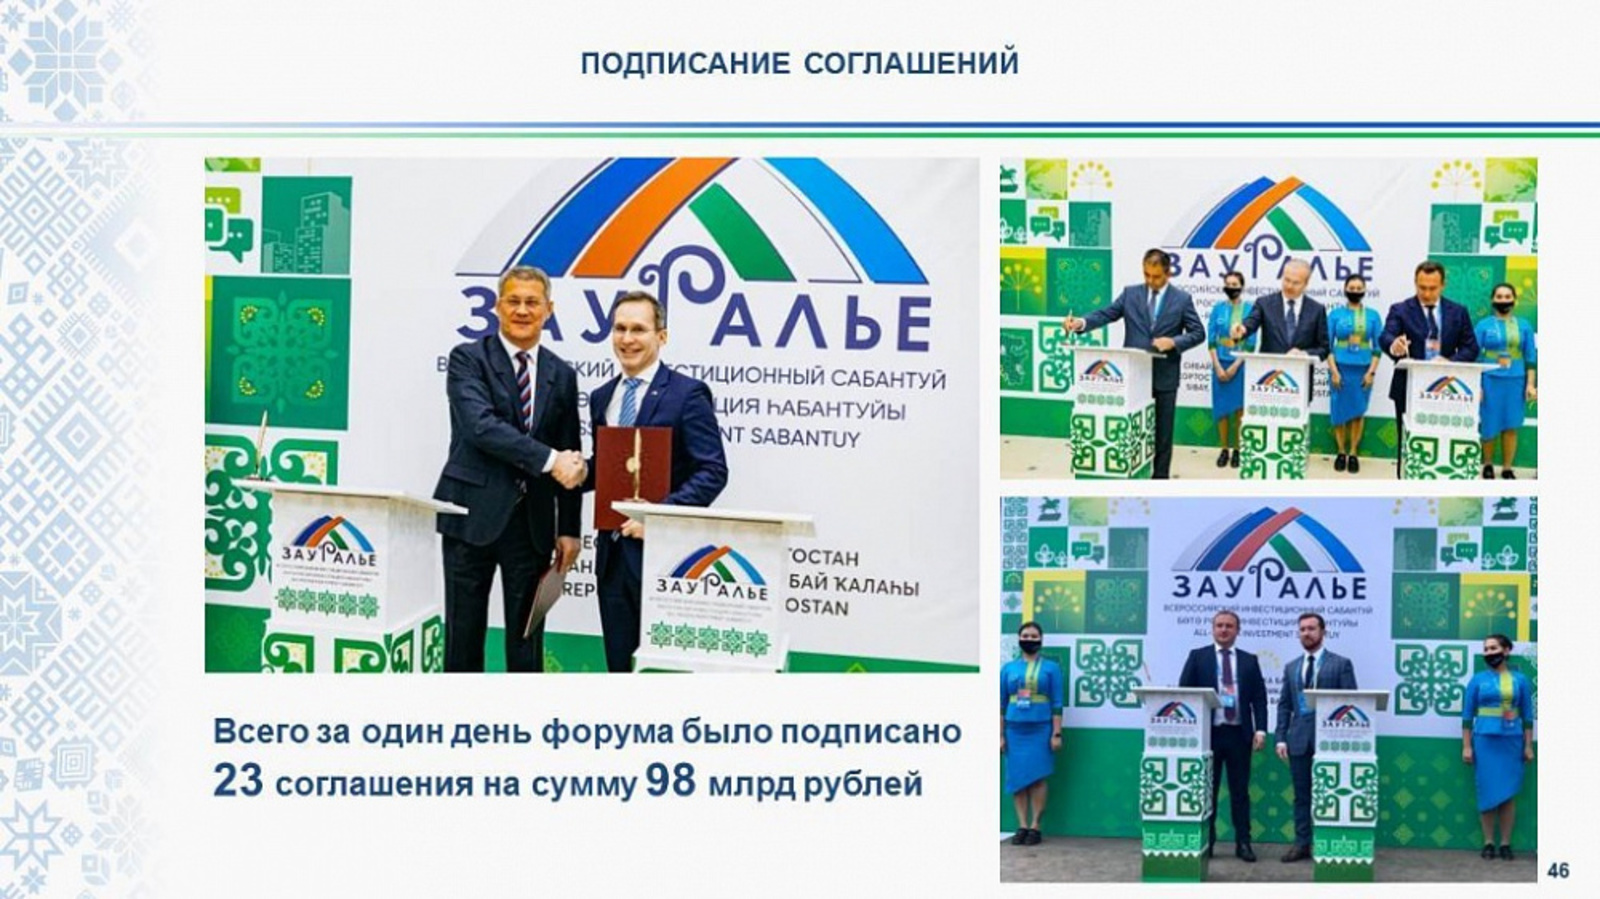 На инвестсабантуе «Зауралье» Башкирия подписала соглашения на 98 млрд рублей